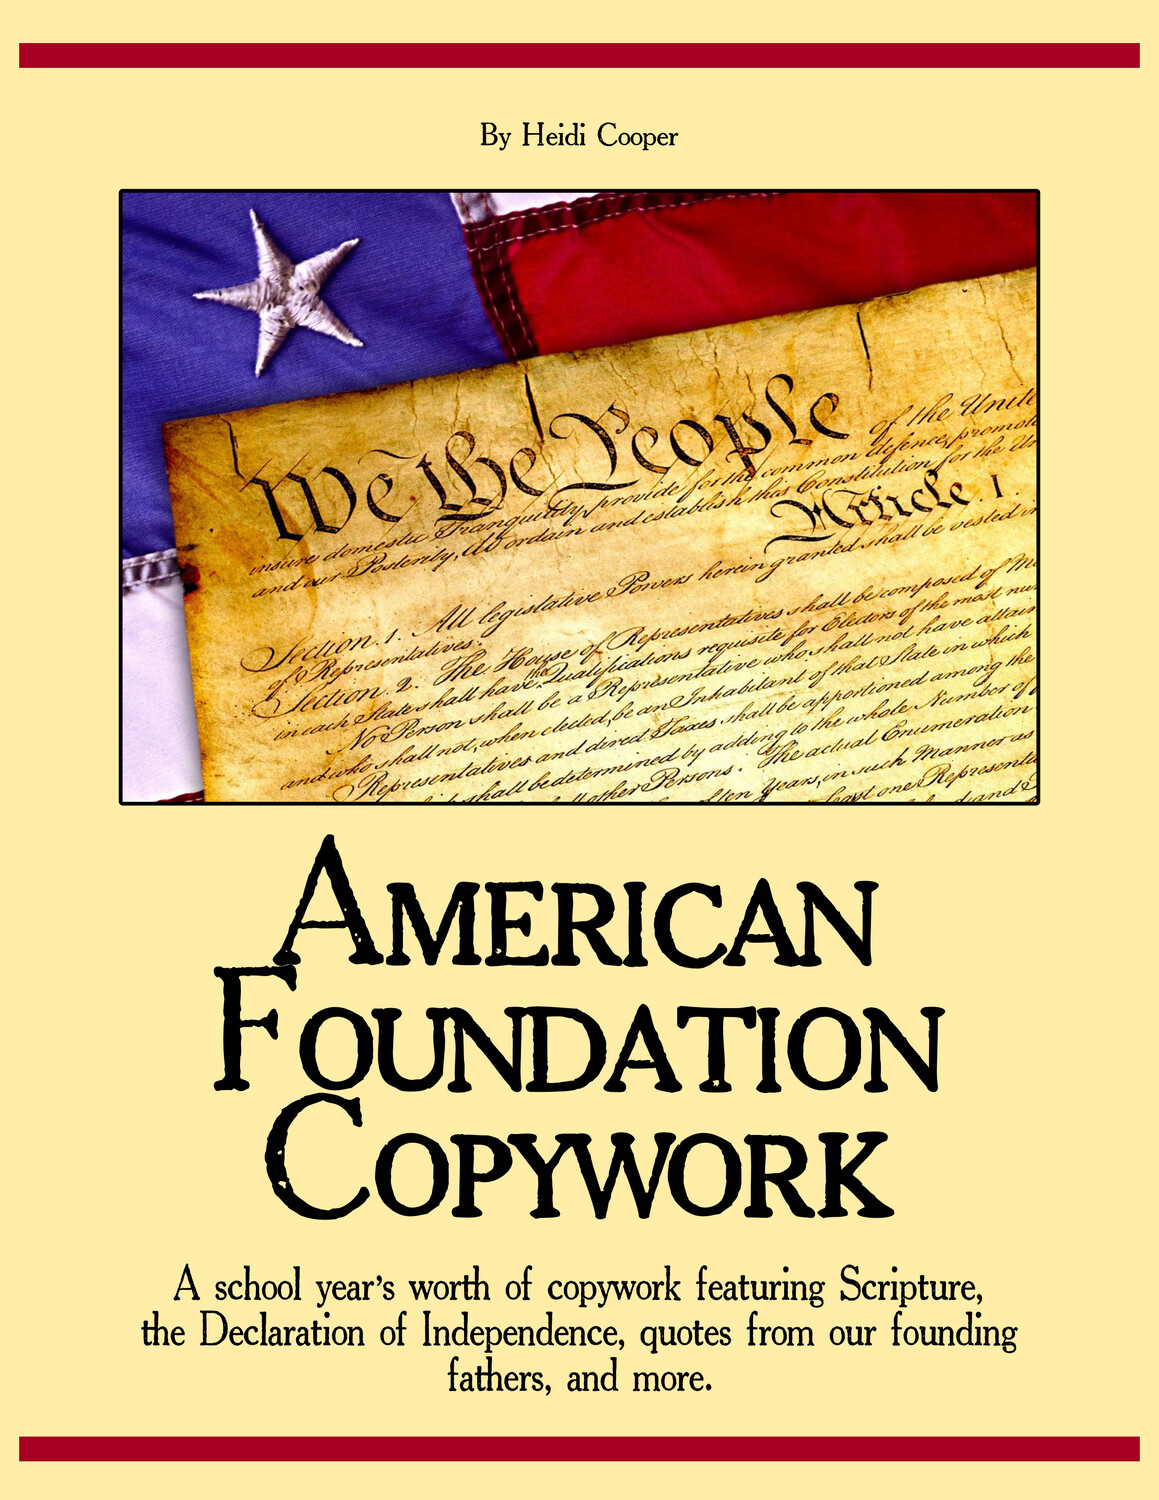 American Foundation copywork